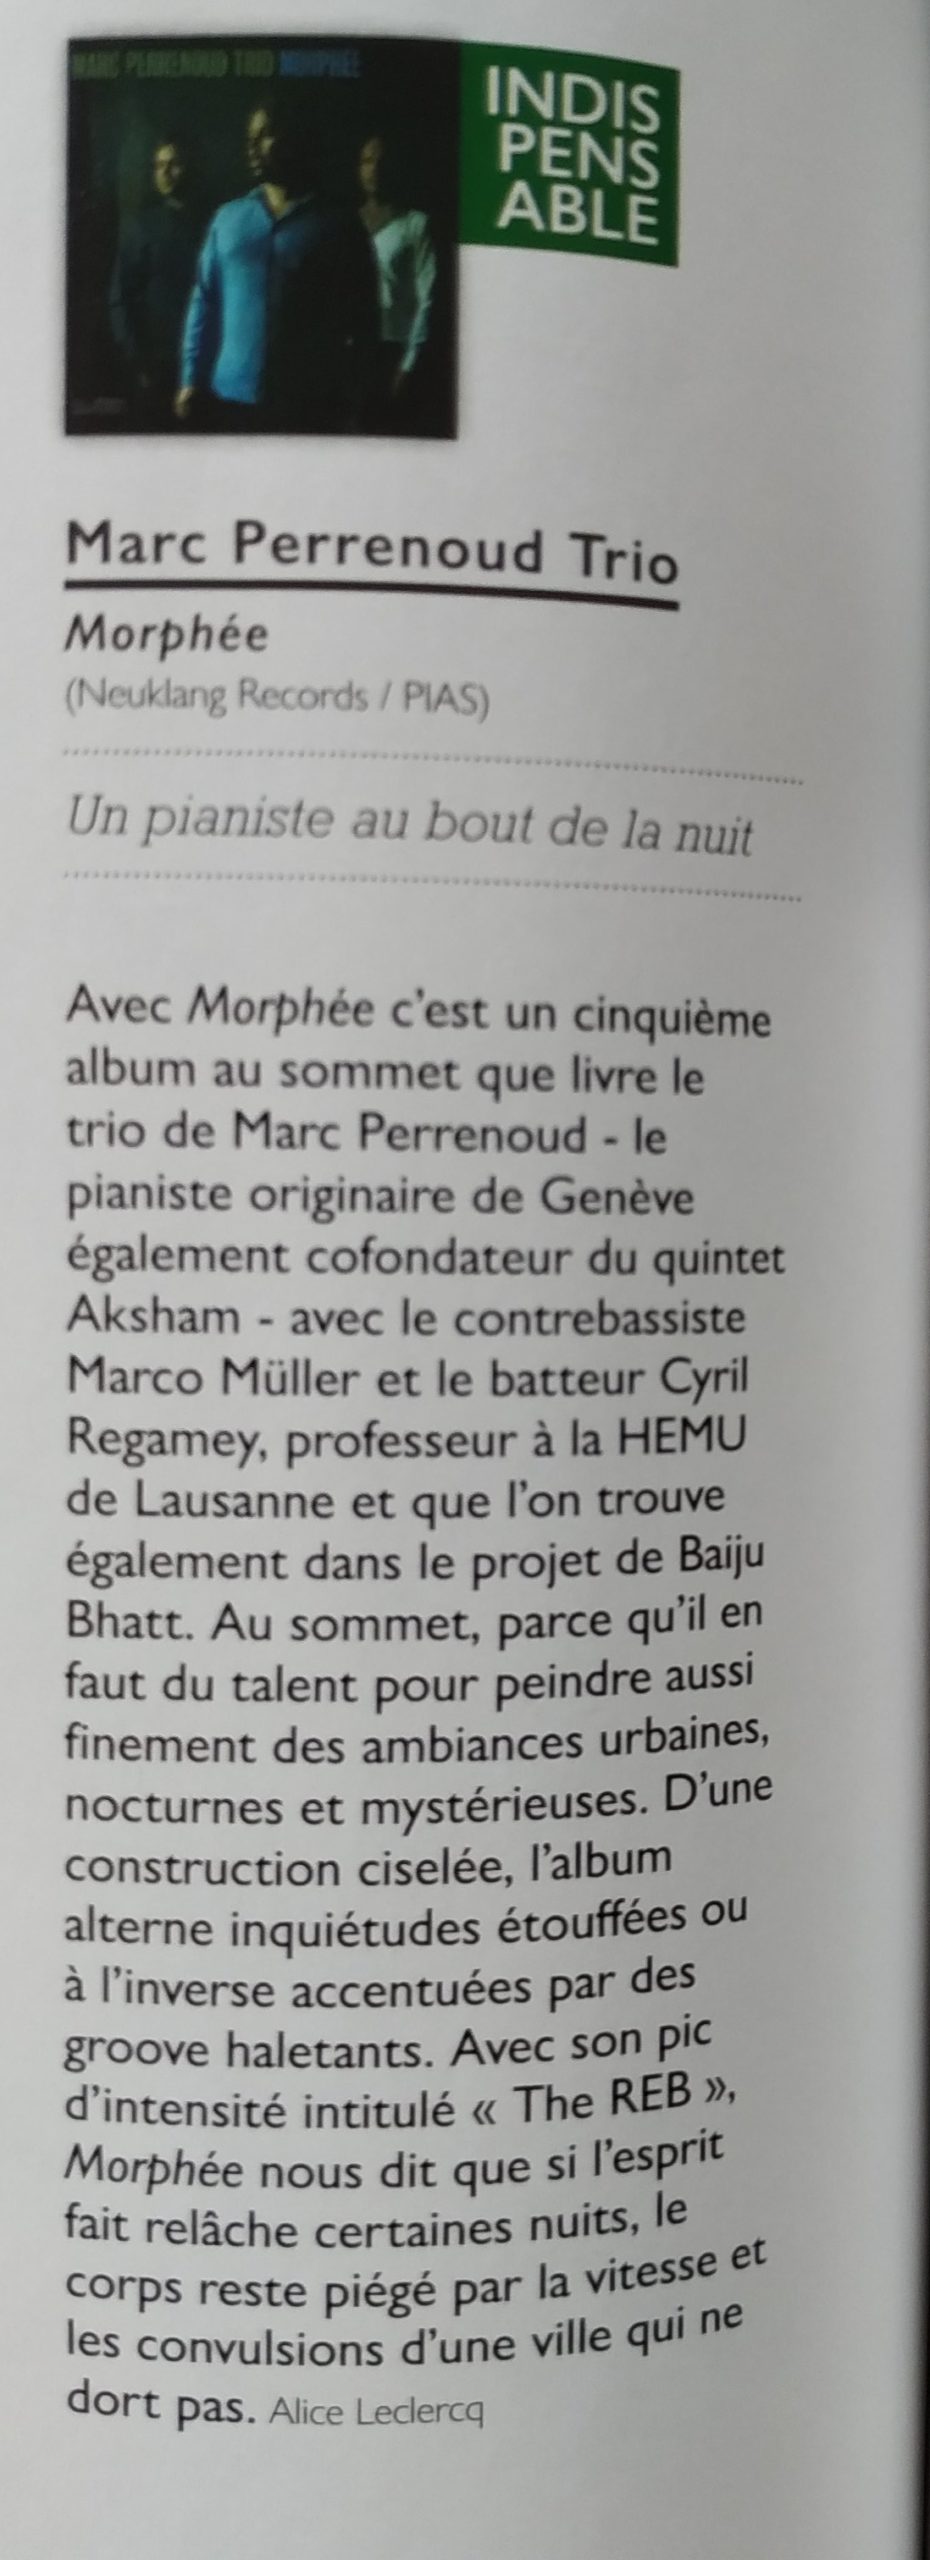 Jazz News France 2020 marc perrenoud morphée